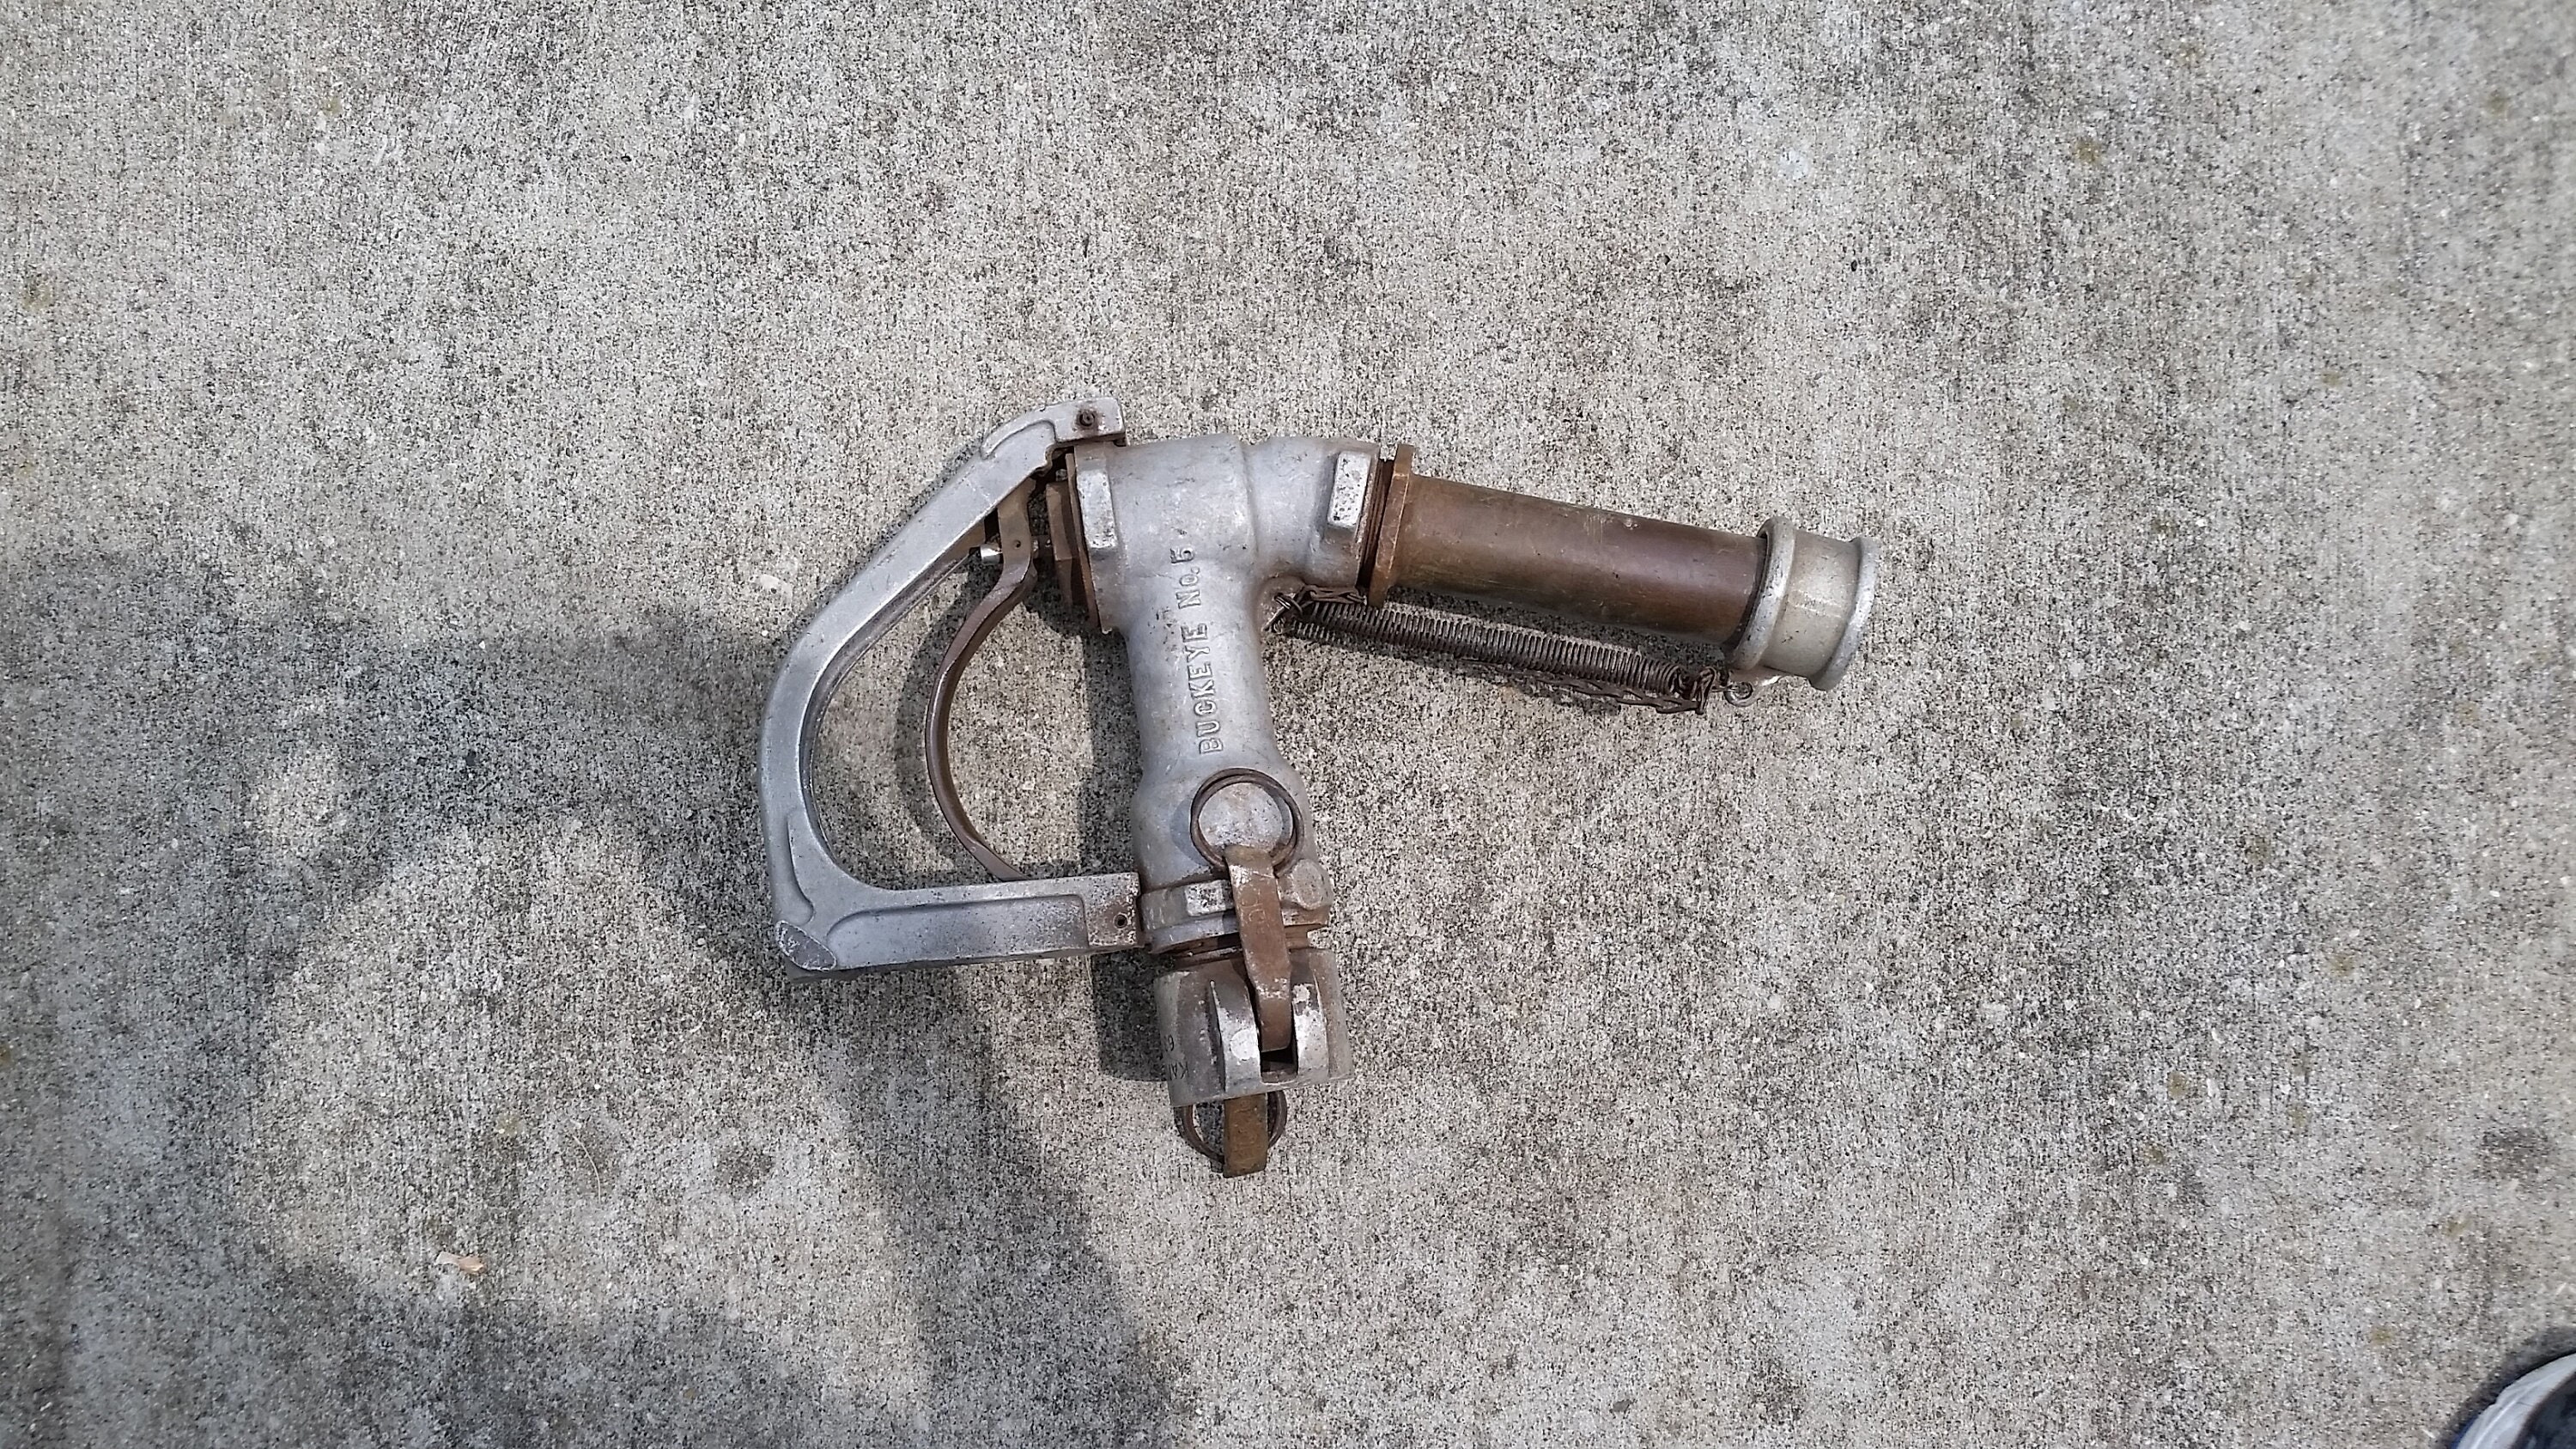 1940s Buckeye Brass Gas Pump Nozzle FIG. 800-B